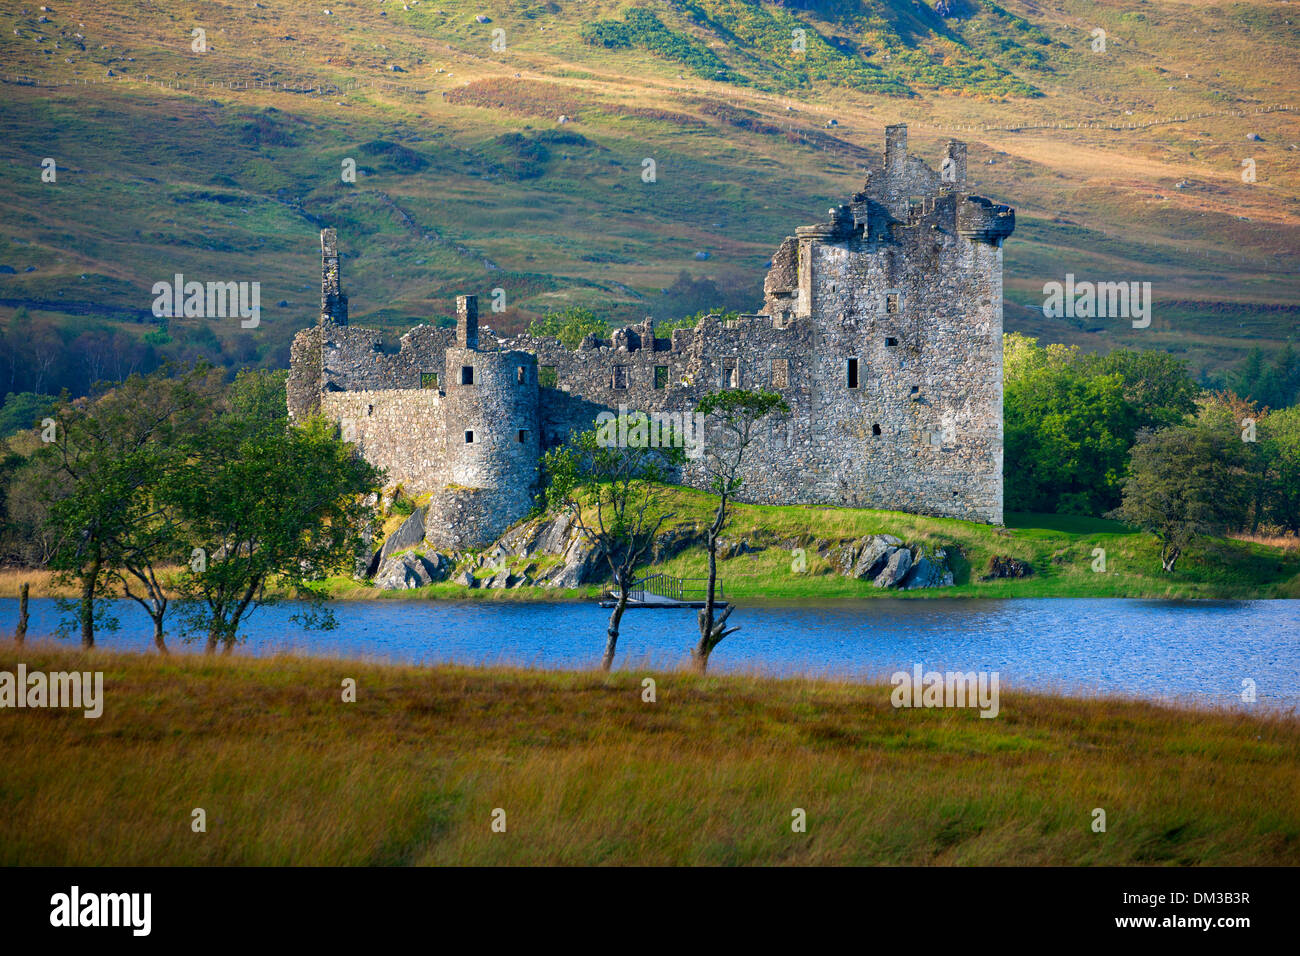 Le Château de Kilchurn, Grande-Bretagne, Europe, l'Ecosse, Loch Awe, lac, eau, château, ruines, arbres, prairie, automne Banque D'Images